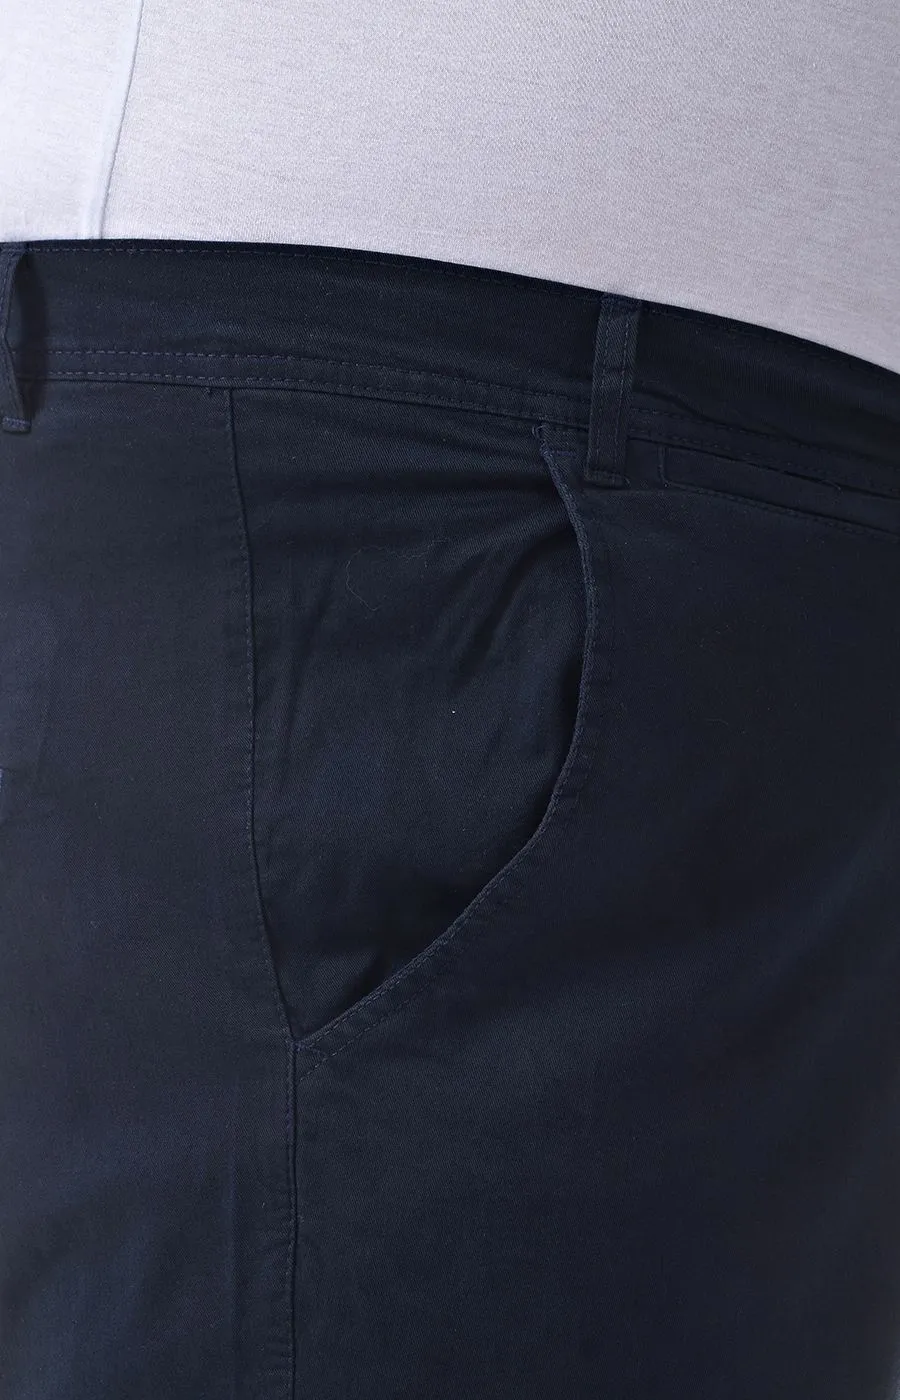 Брюки джинсового кроя синего цвета большого размера